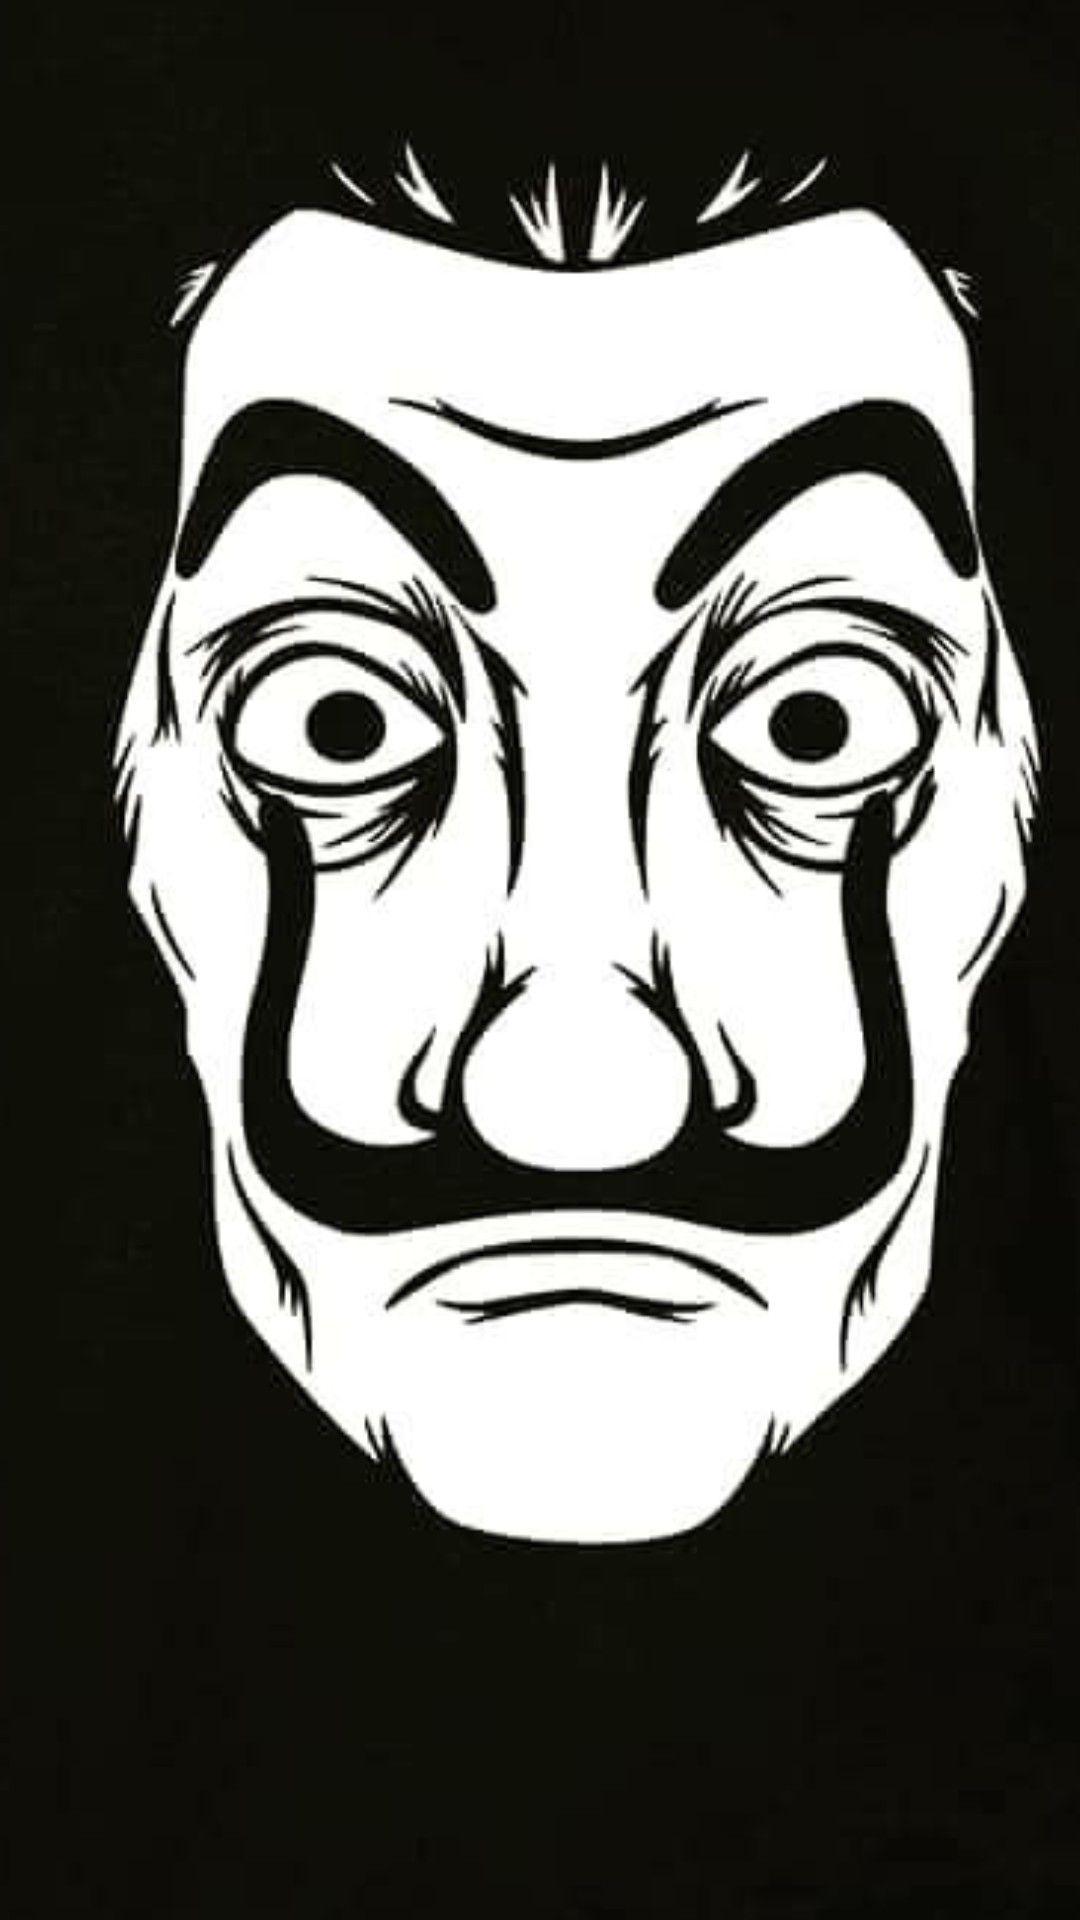 Money Heist Mask Wallpapers - Top Free Money Heist Mask ...